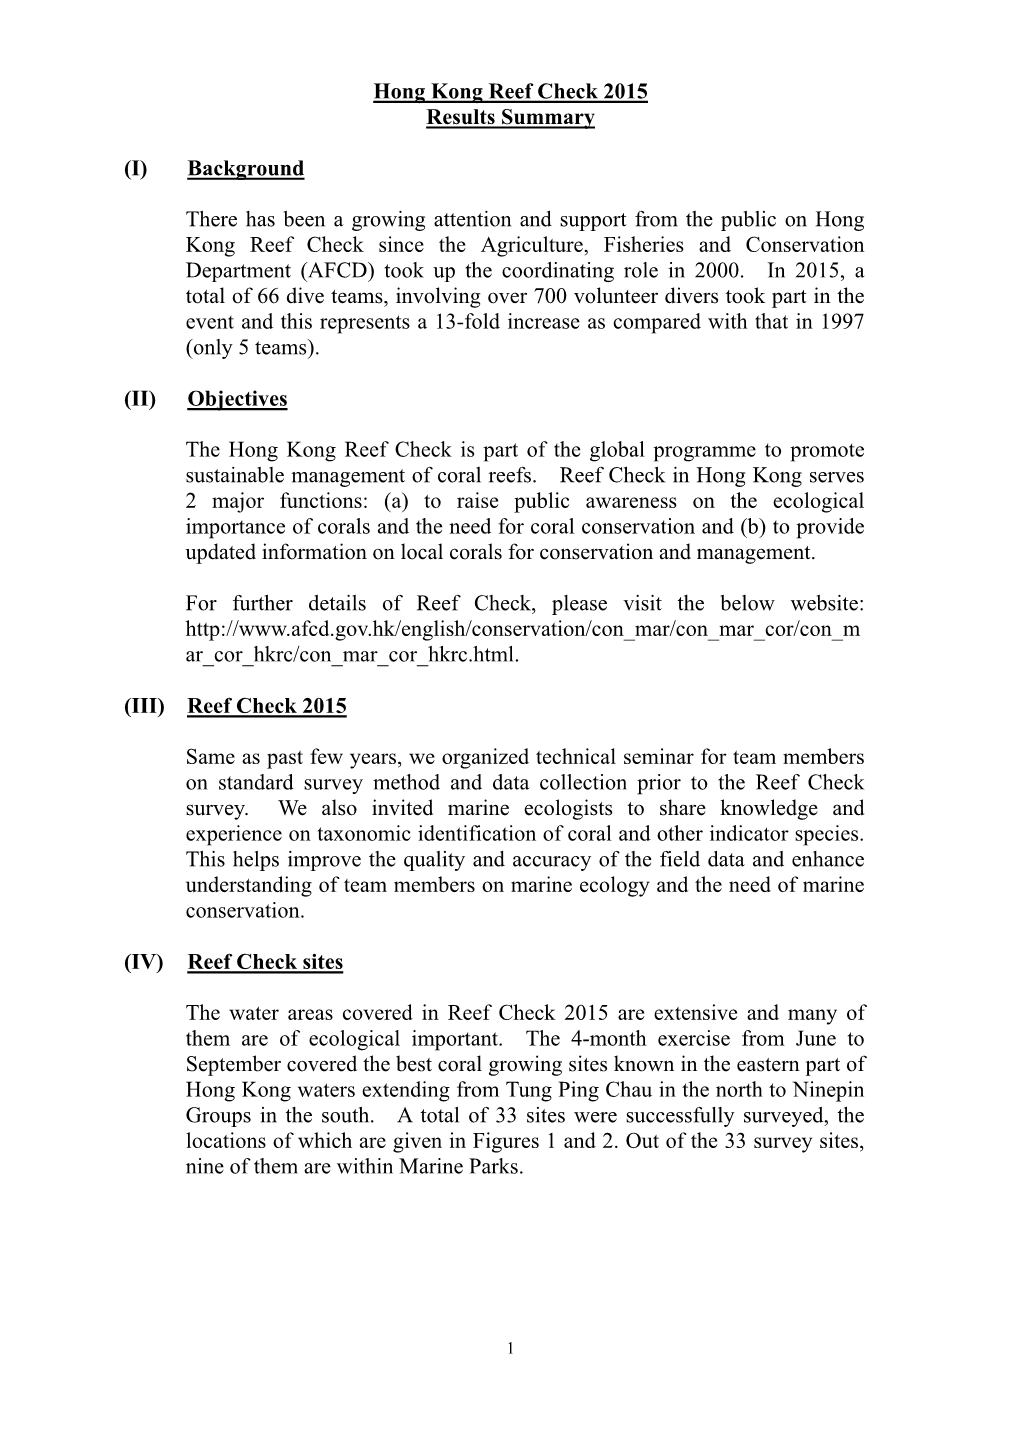 Hong Kong Reef Check 2015 Results Summary